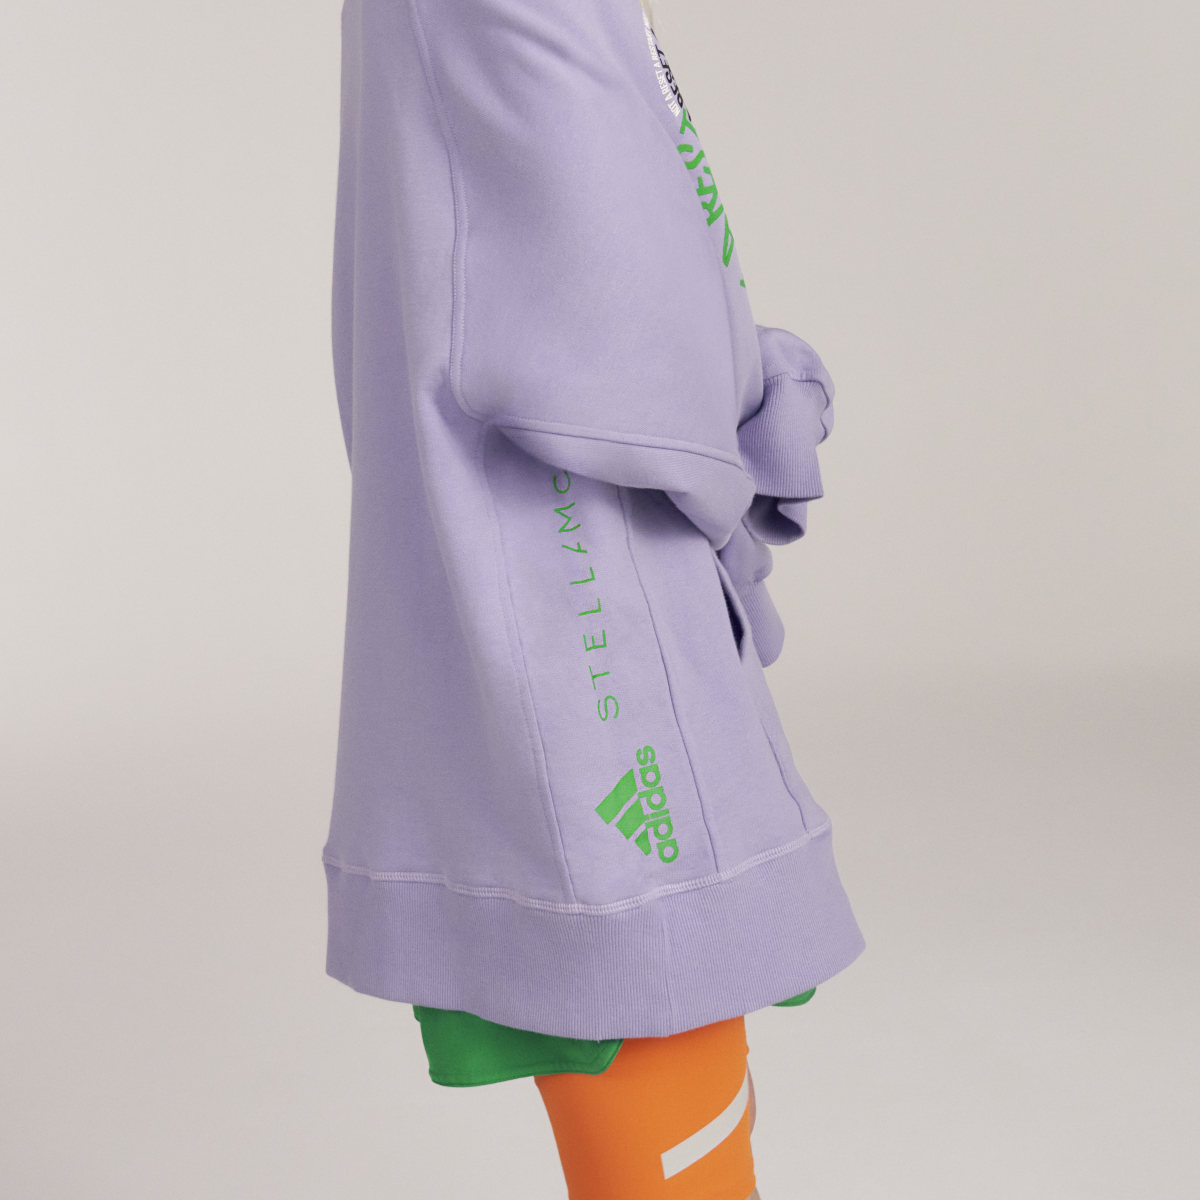 Adidas by Stella McCartney Pull On- Gender Neutral. 10